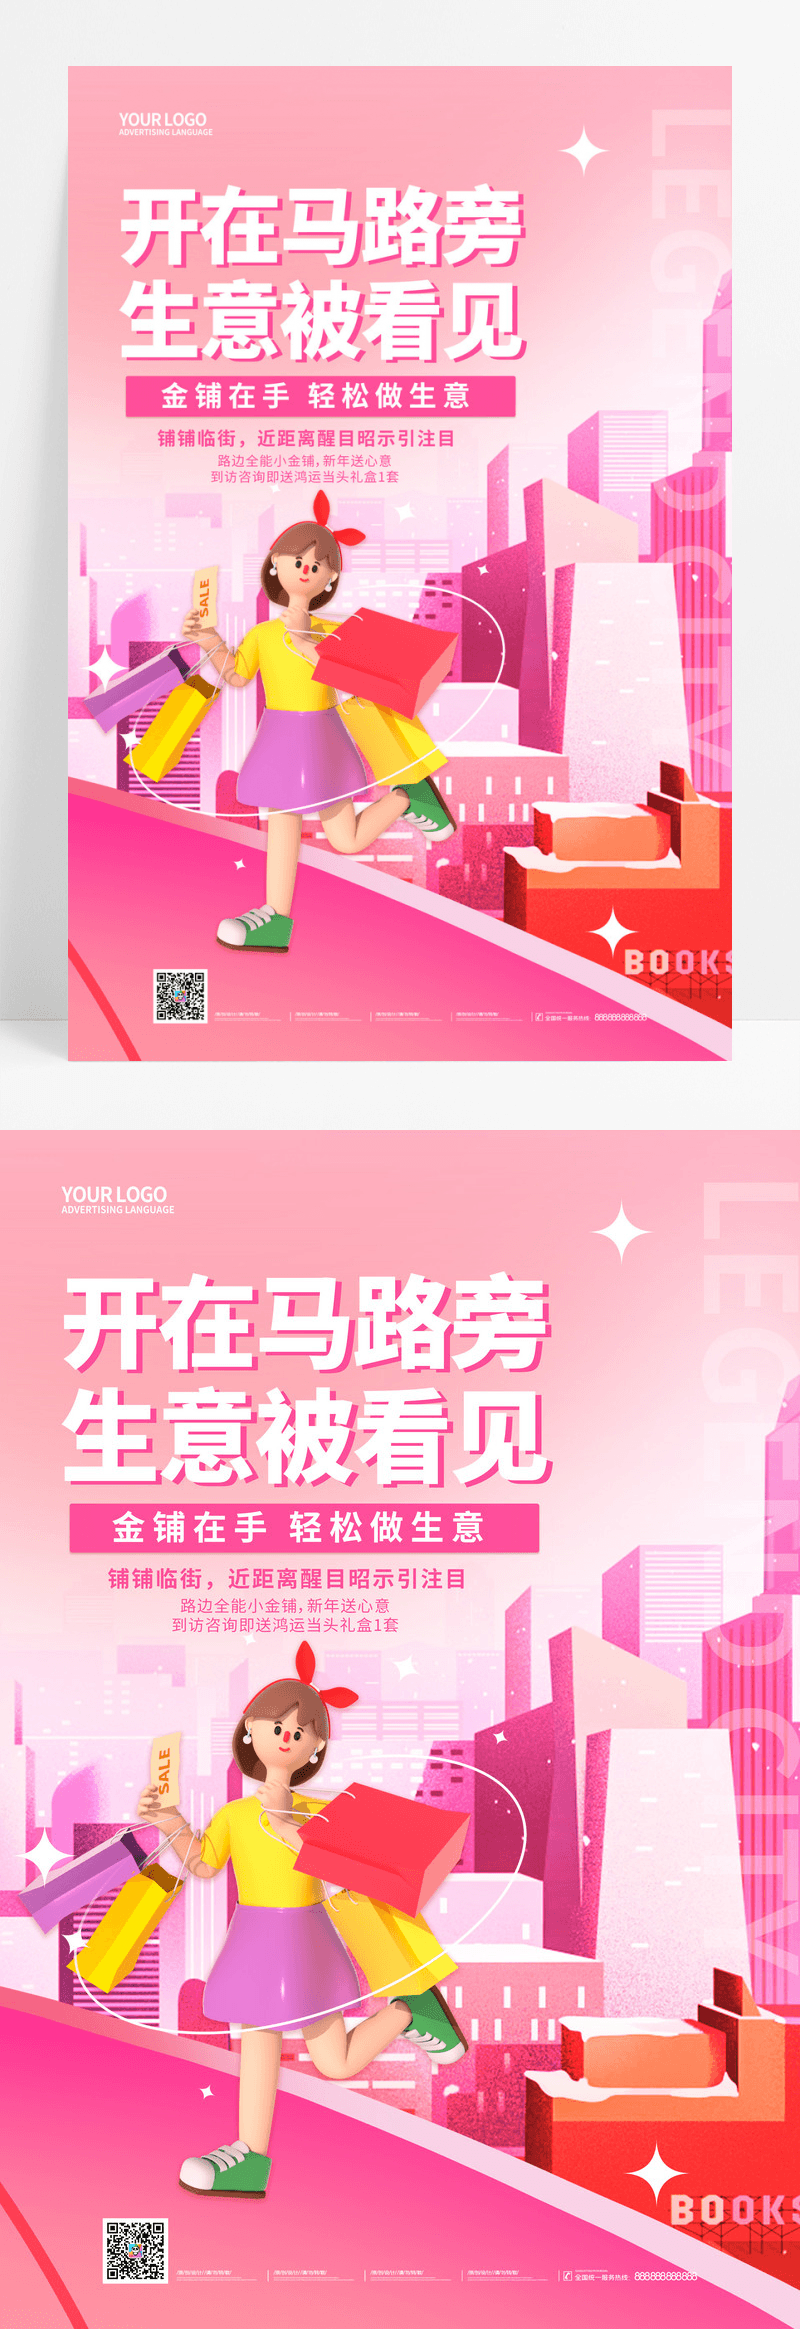 粉色3d招商手机宣传海报招商招租